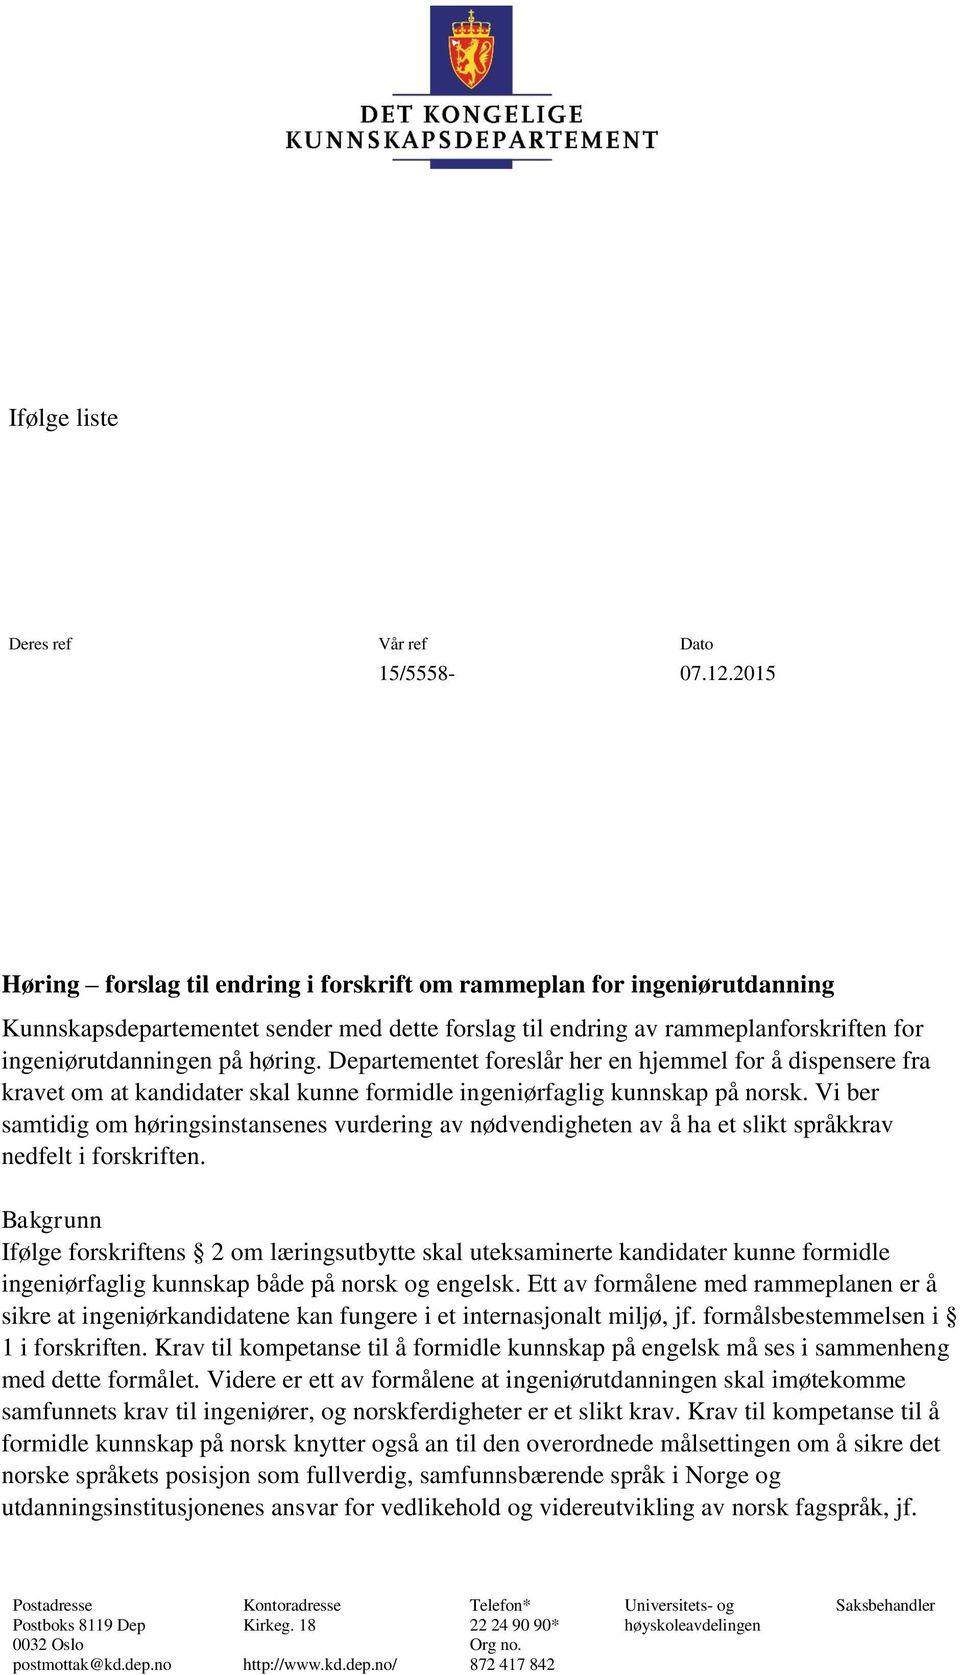 Departementet foreslår her en hjemmel for å dispensere fra kravet om at kandidater skal kunne formidle ingeniørfaglig kunnskap på norsk.